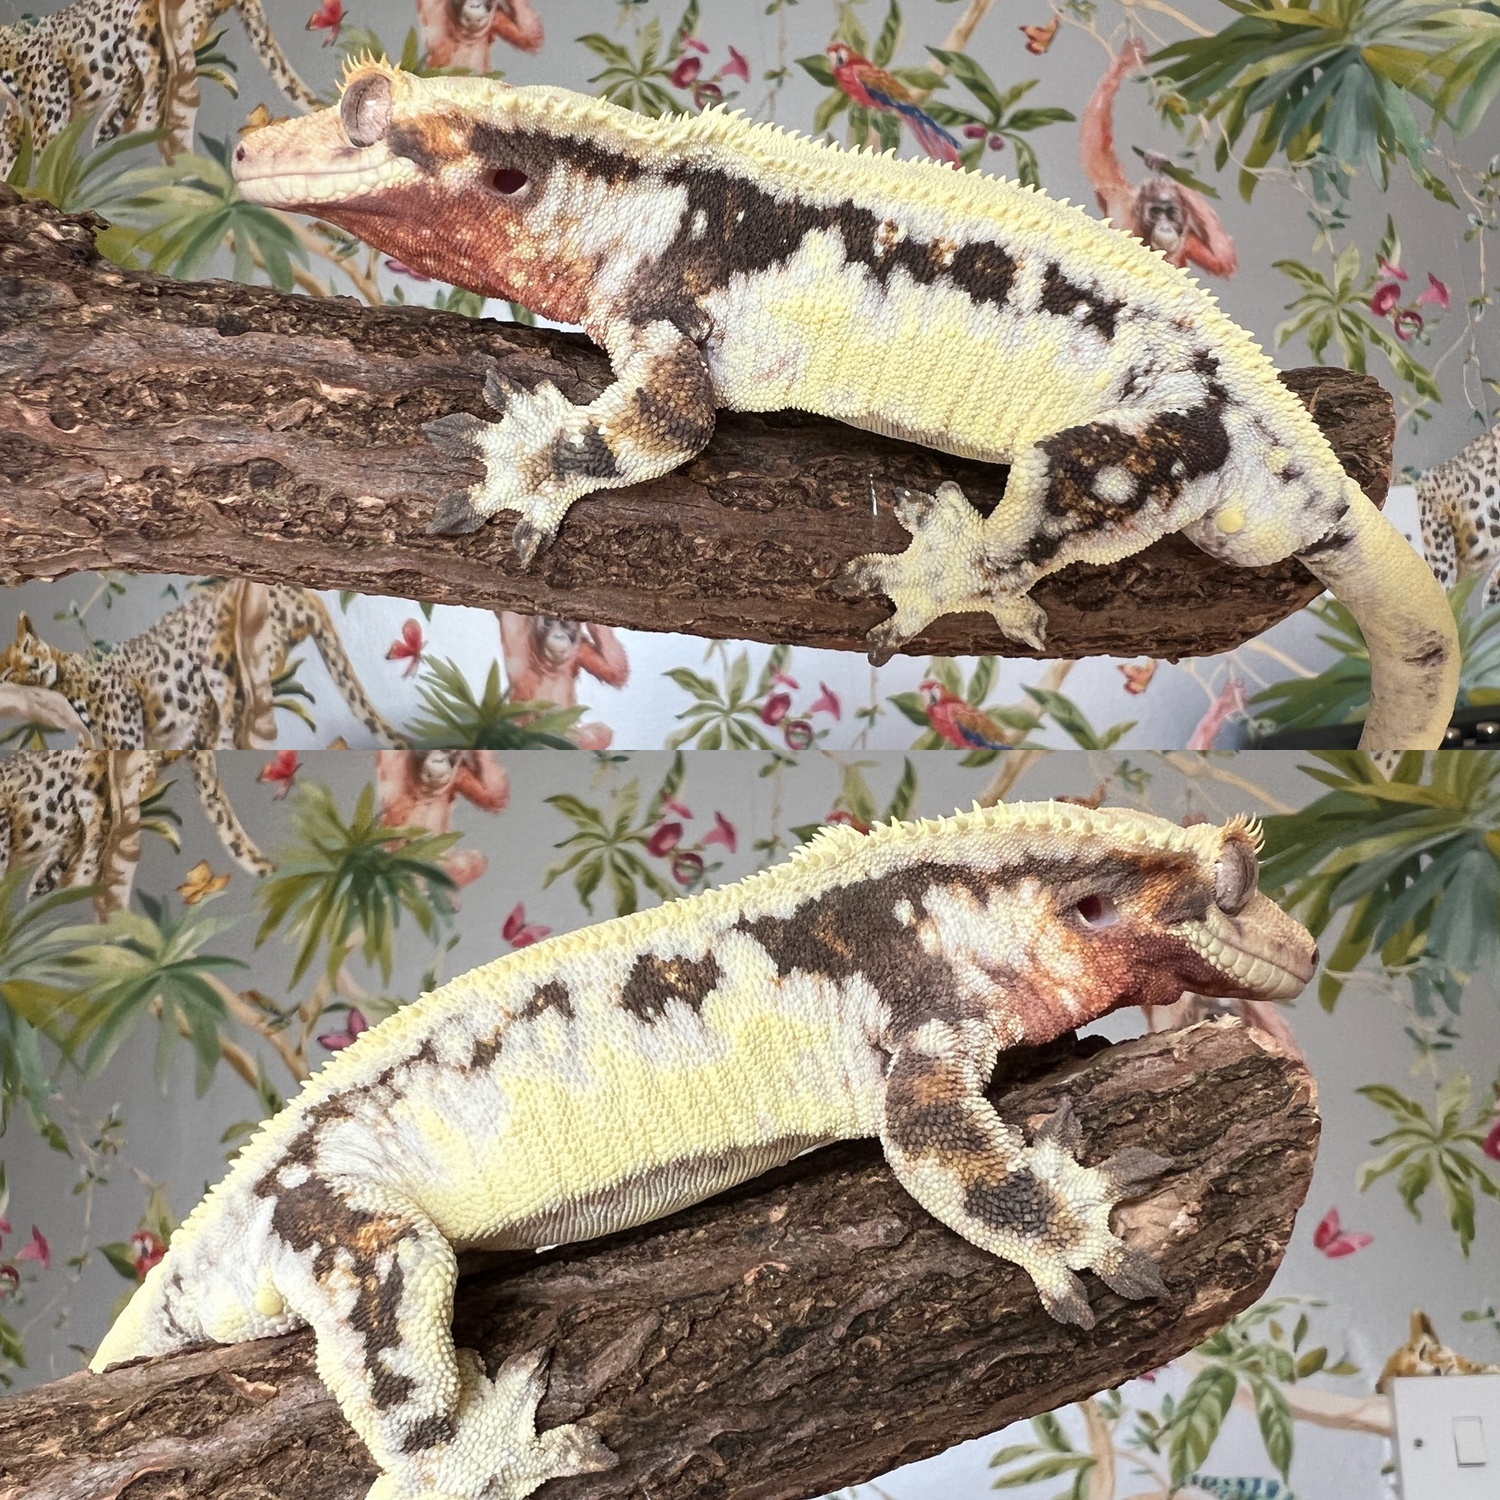 Drippy Lilly White by Apex Predator Geckos